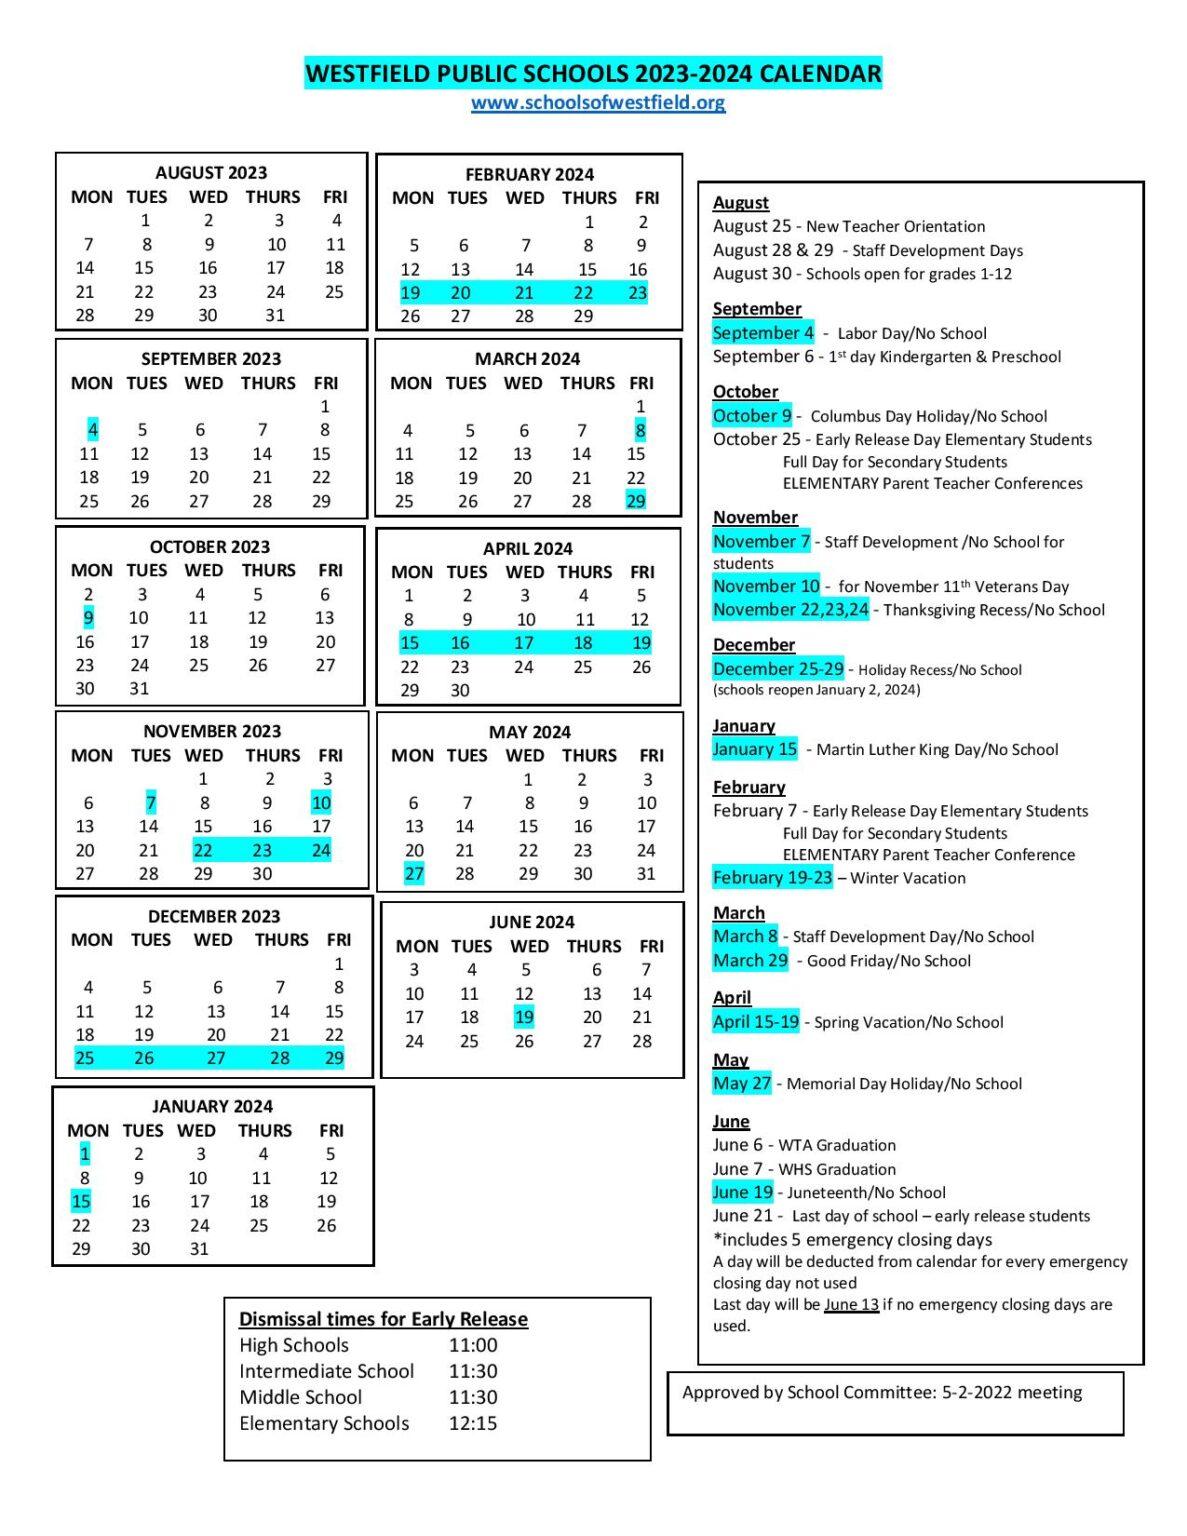 Westfield Public School District Calendar 20232024 in PDF